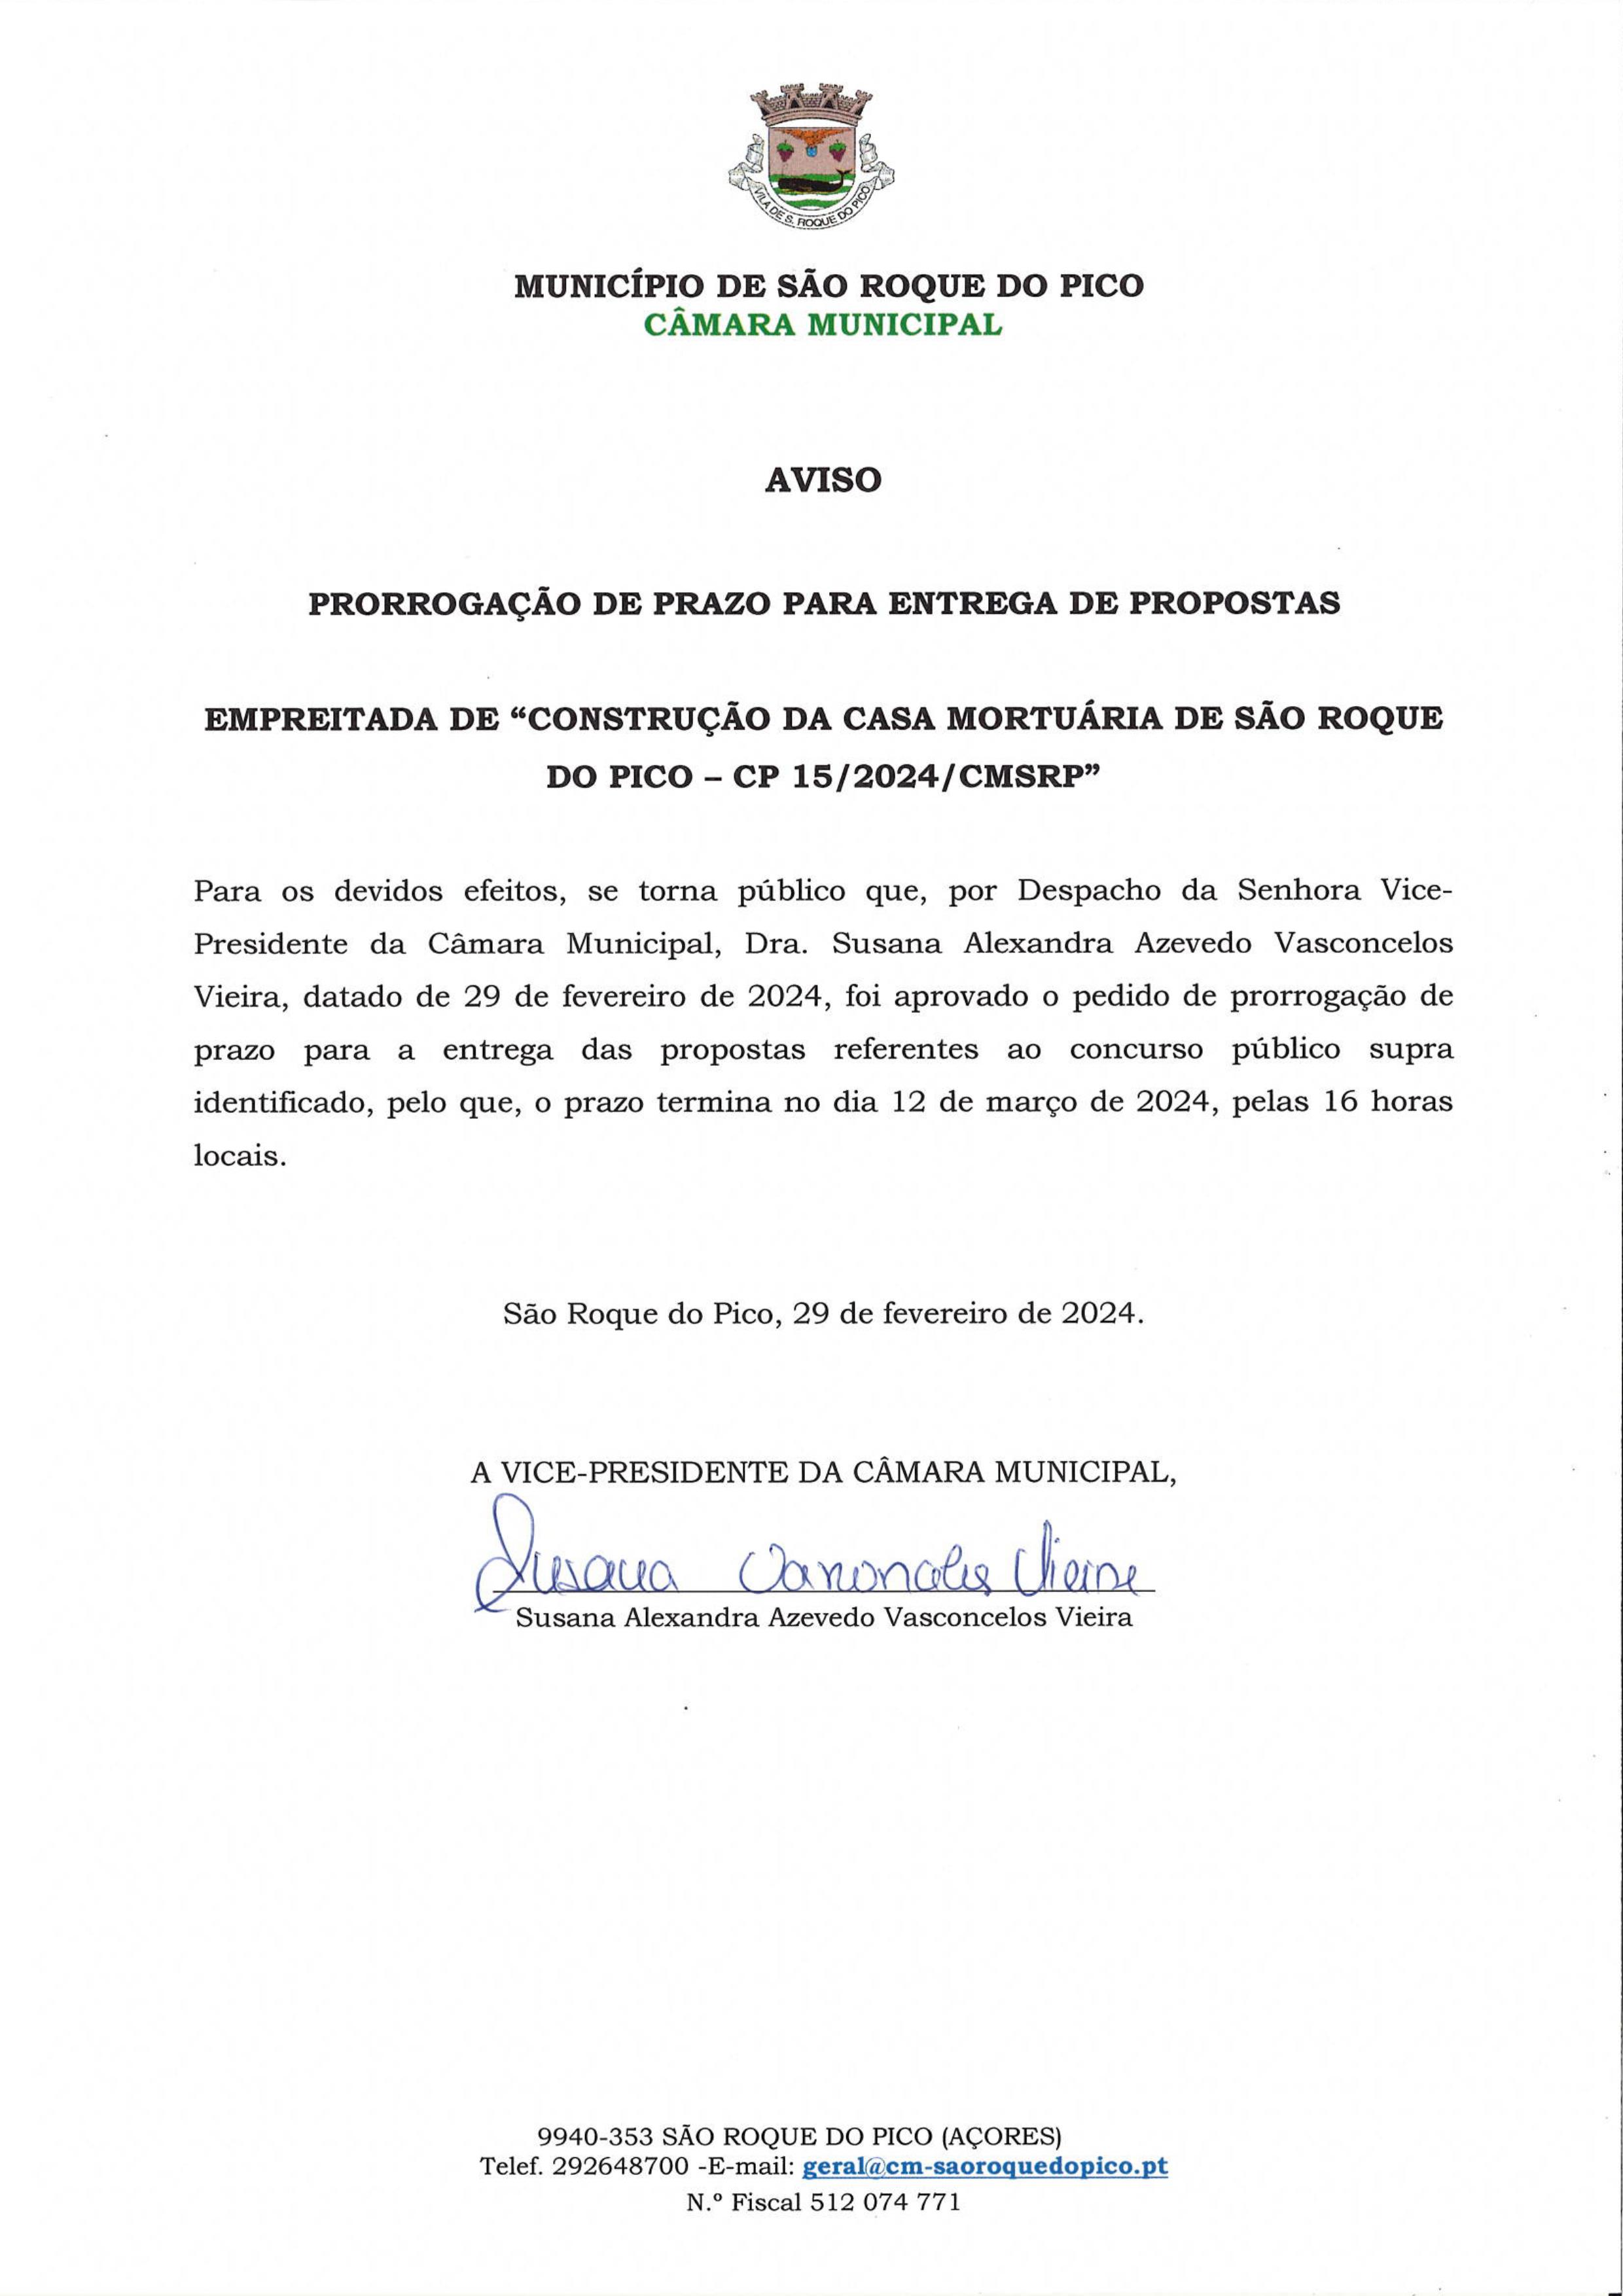 Prorrogação de prazo para a entrega de propostas da empreitada "Construção da Casa Mortuária de São Roque do Pico"